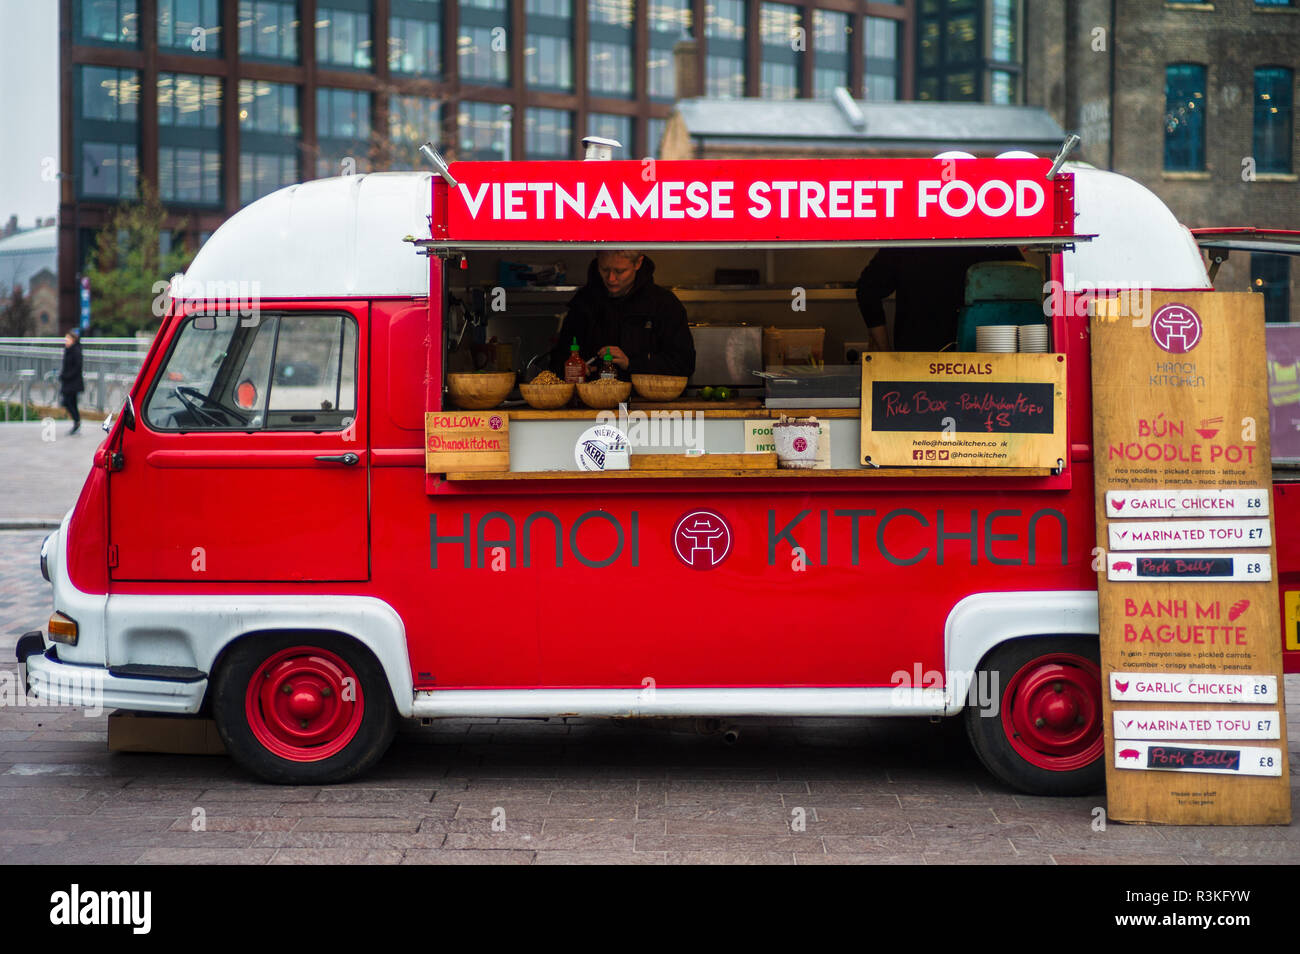 London Street Food - Hanoi Kitchen Vietnamese Street Food Van in a street food market in London's Kings Cross Area Stock Photo